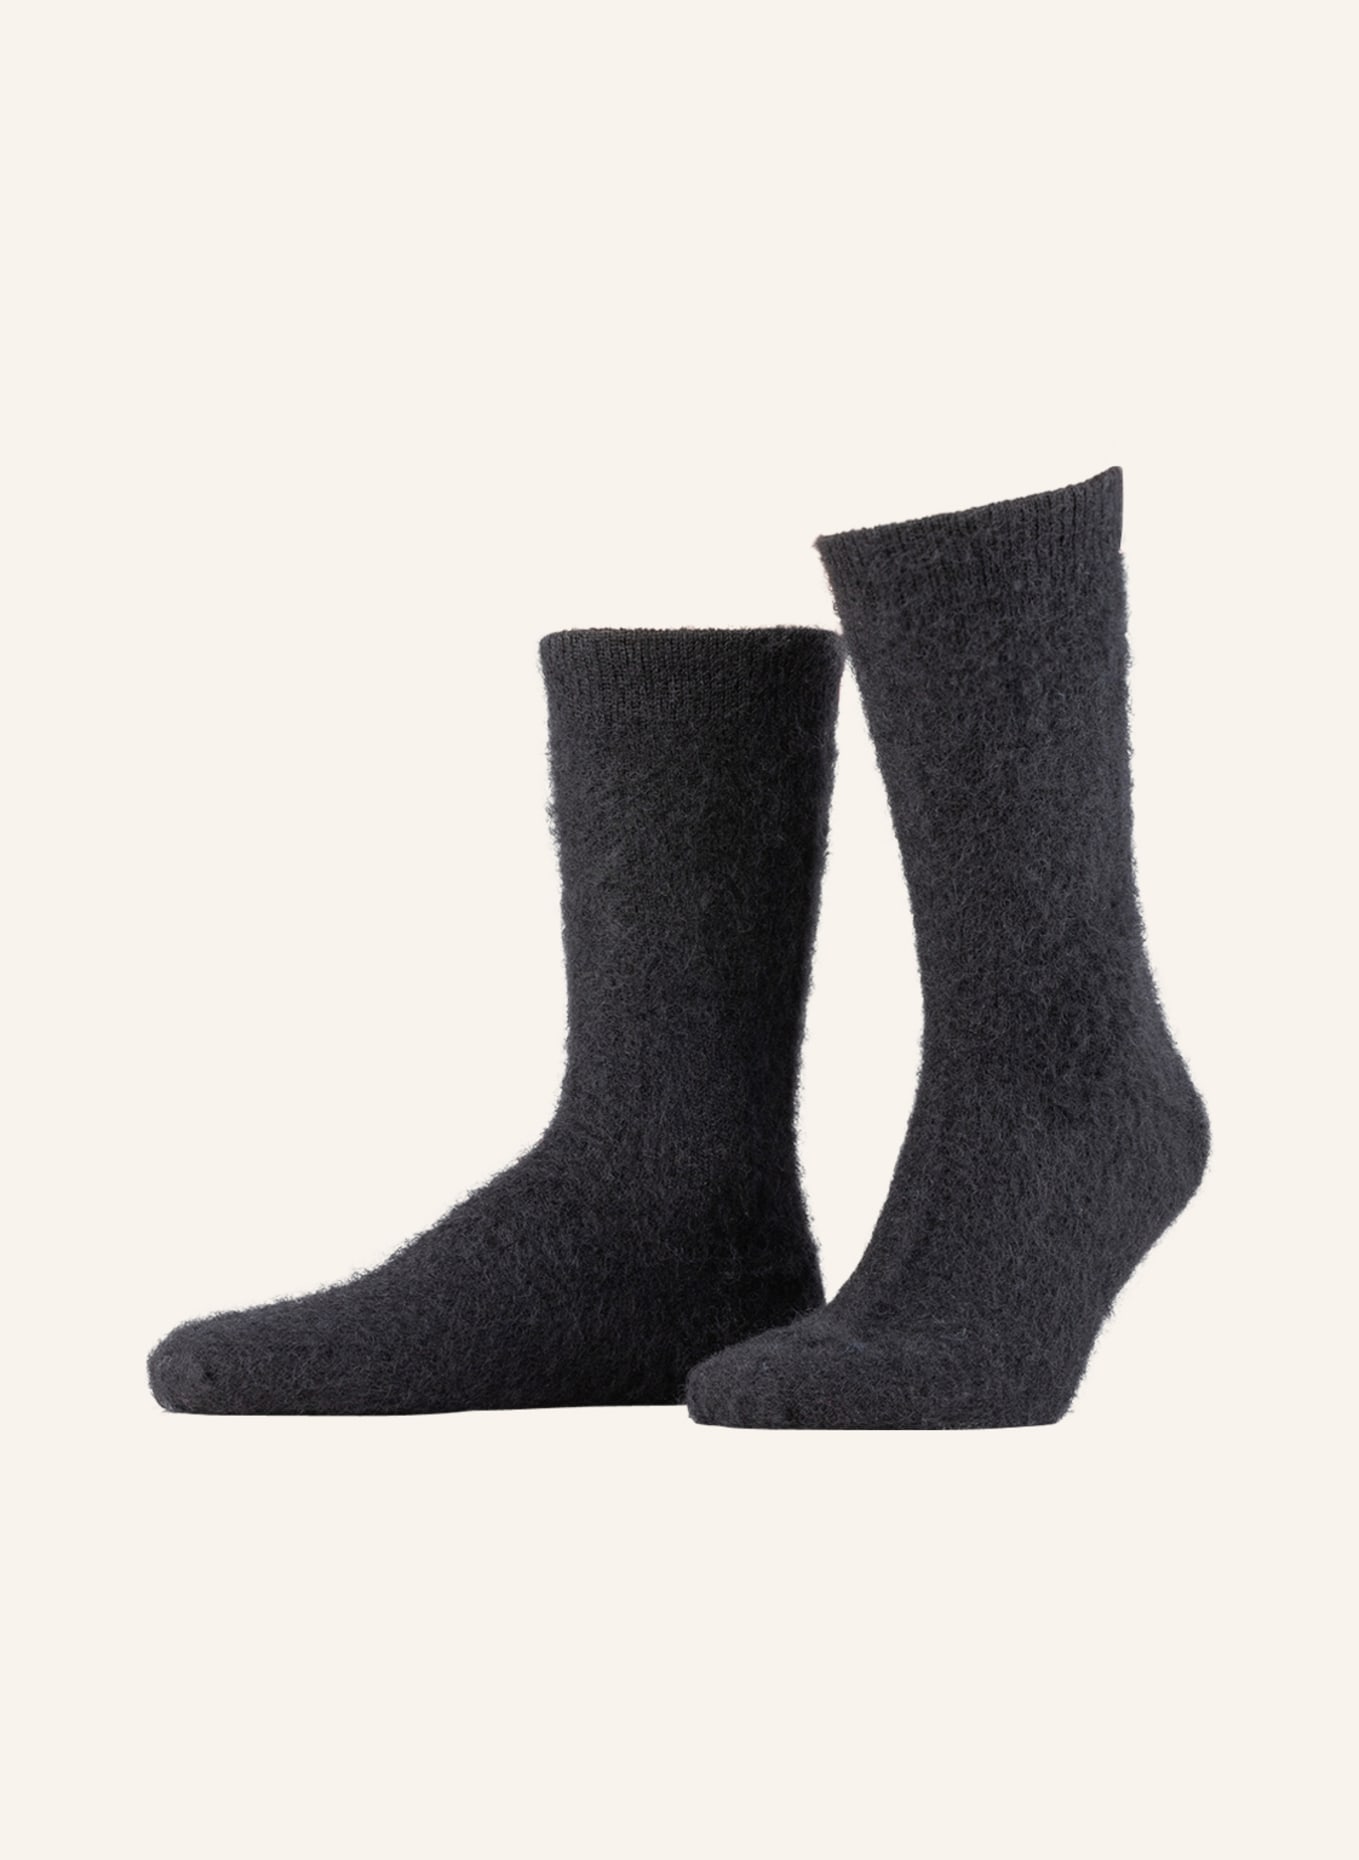 SOCKSSS Socks PHANTOM, Color: PHANTOM (Image 1)